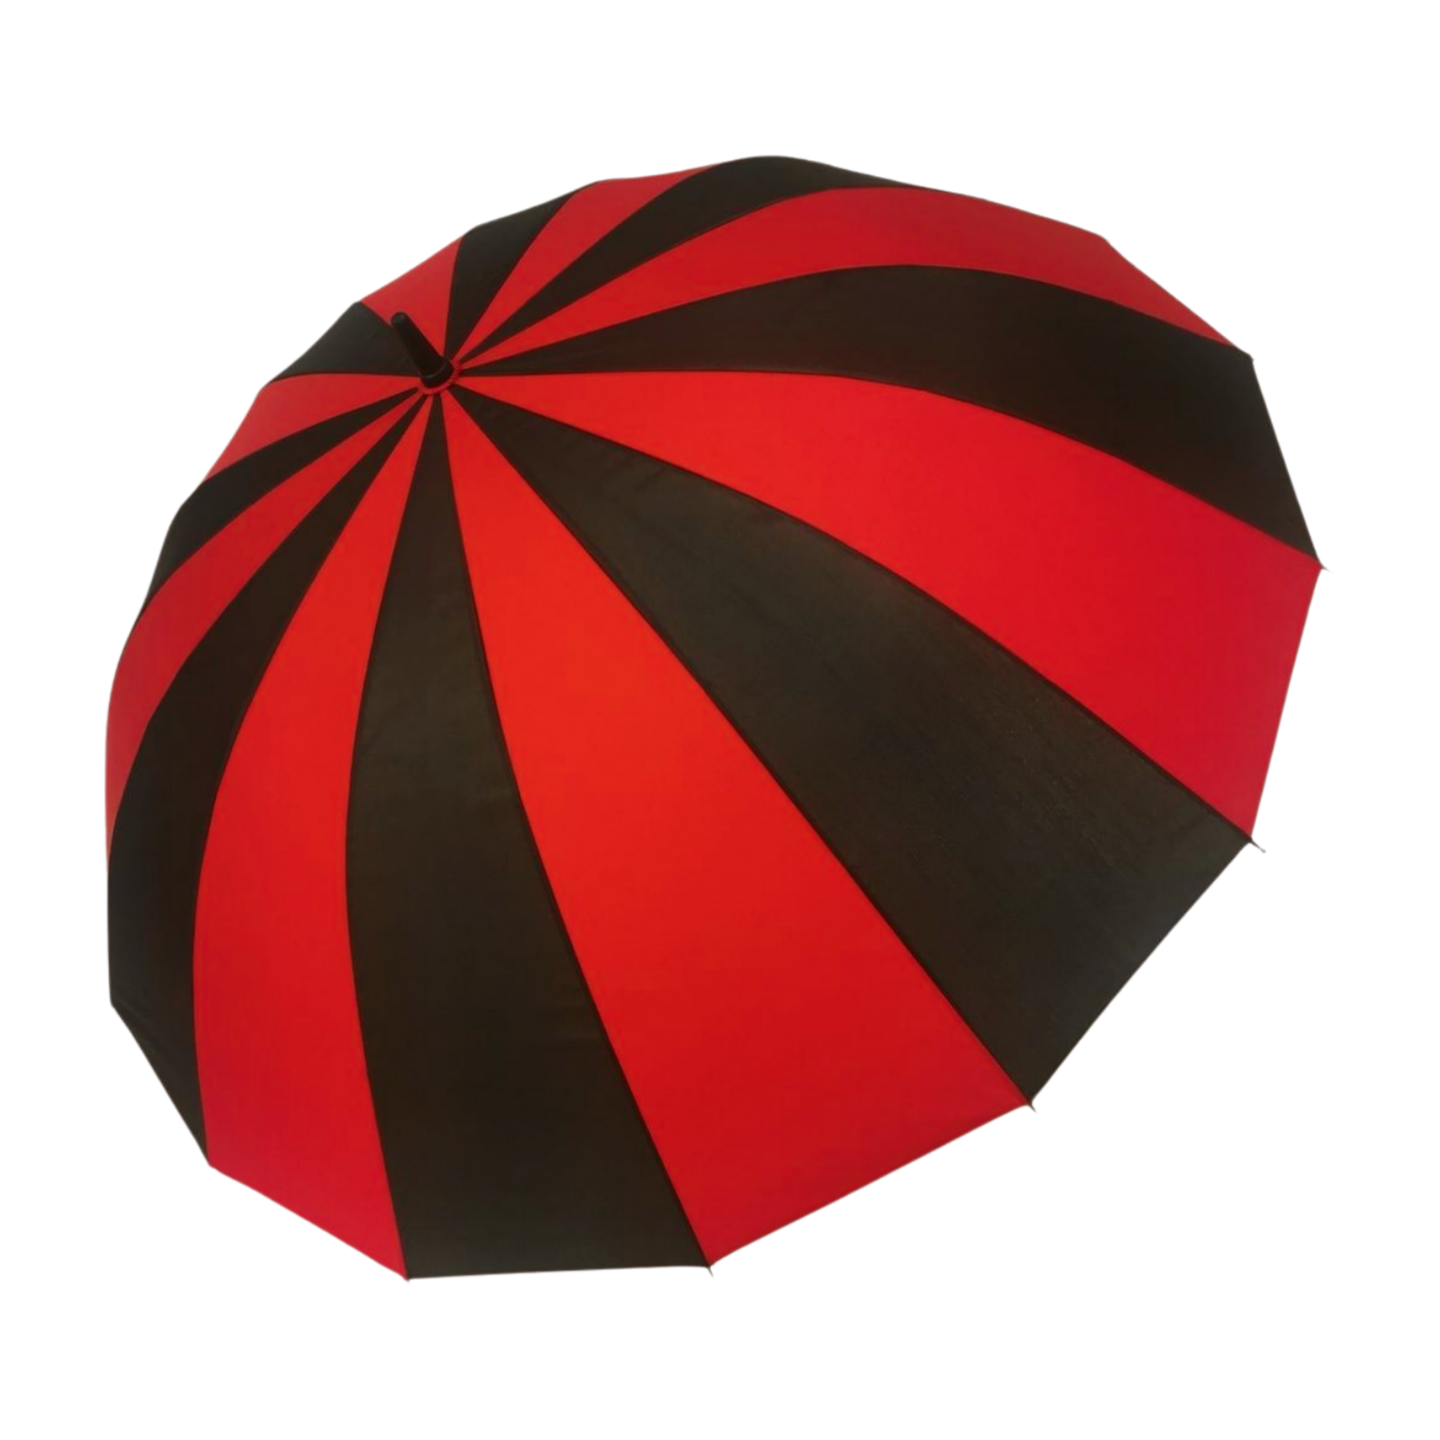 https://www.hodaumbrella.com/16-ribs-blossom-golf-umbrella-product/